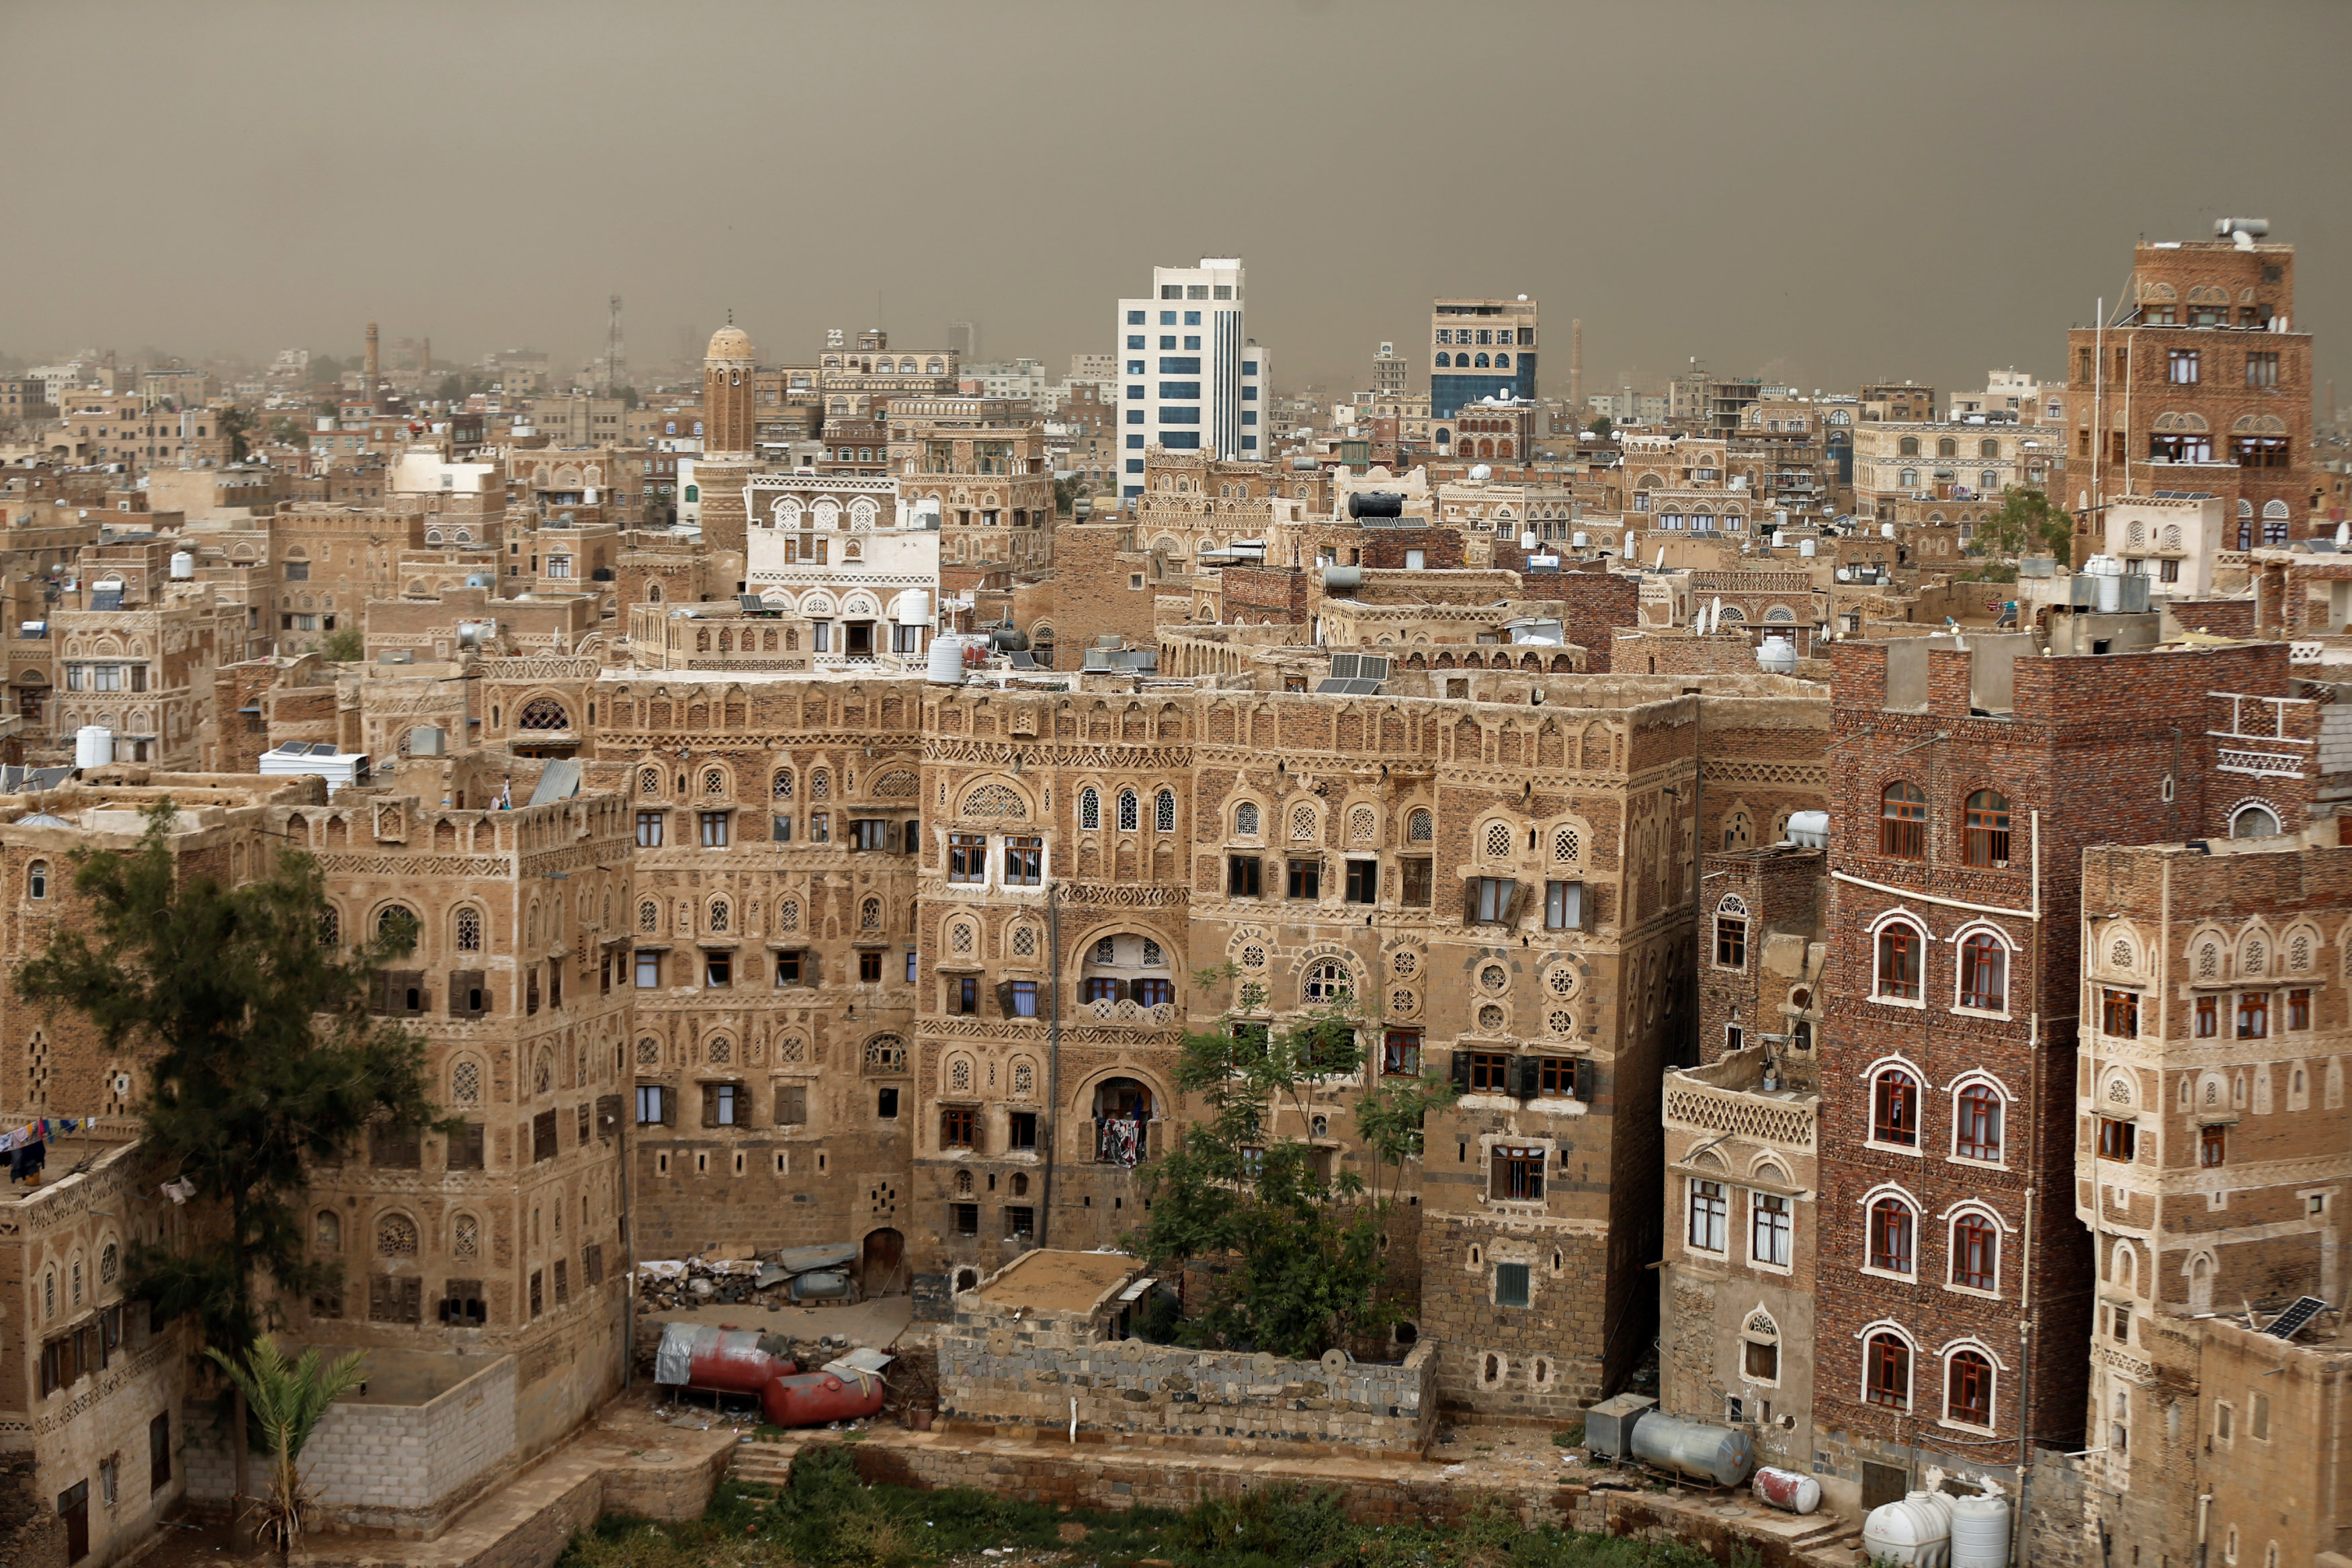 المبانى فى مدينة صنعاء القديمة قبل الحرب